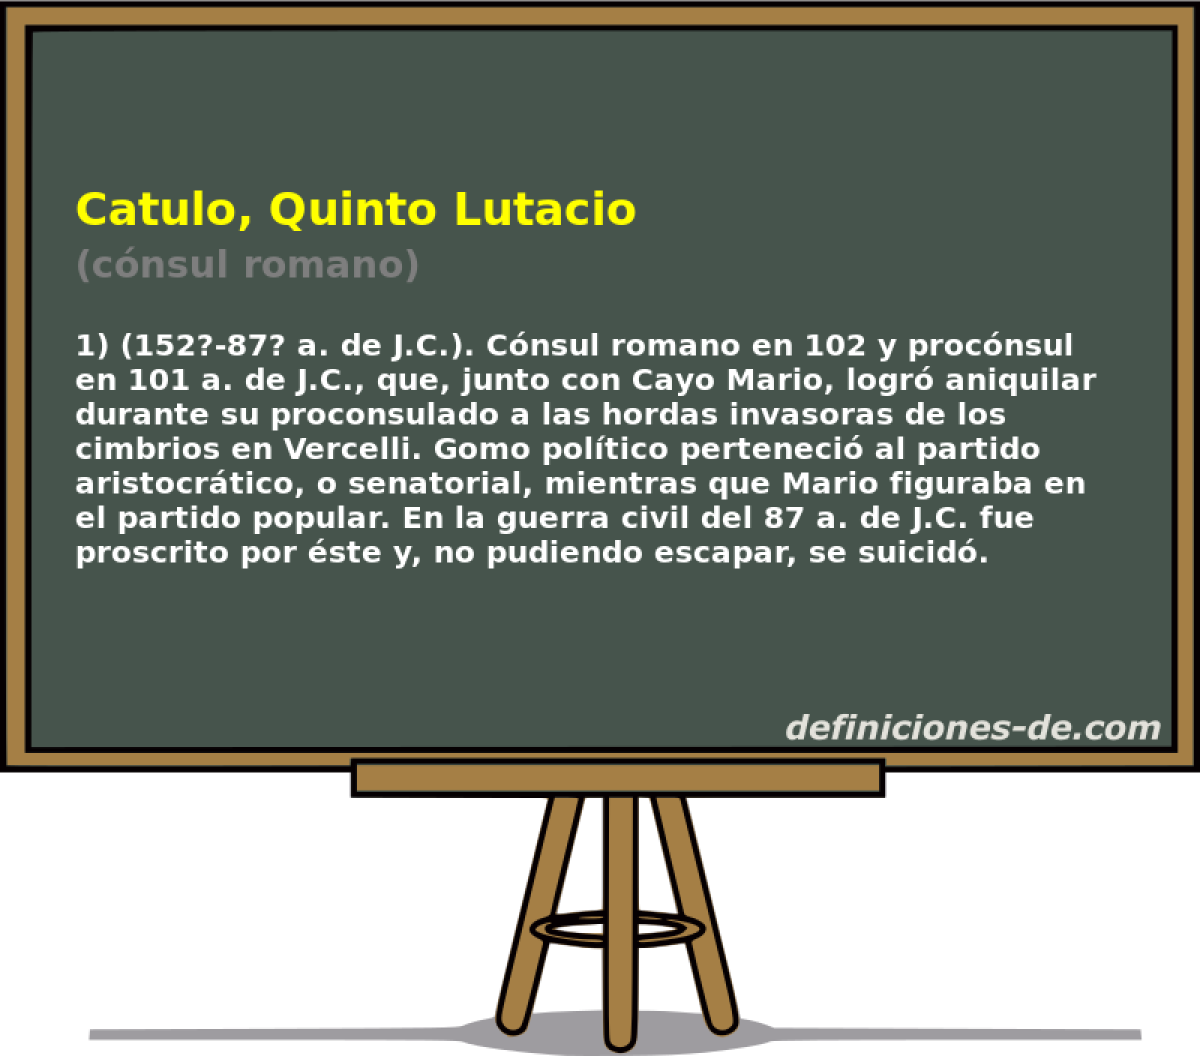 Catulo, Quinto Lutacio (cnsul romano)